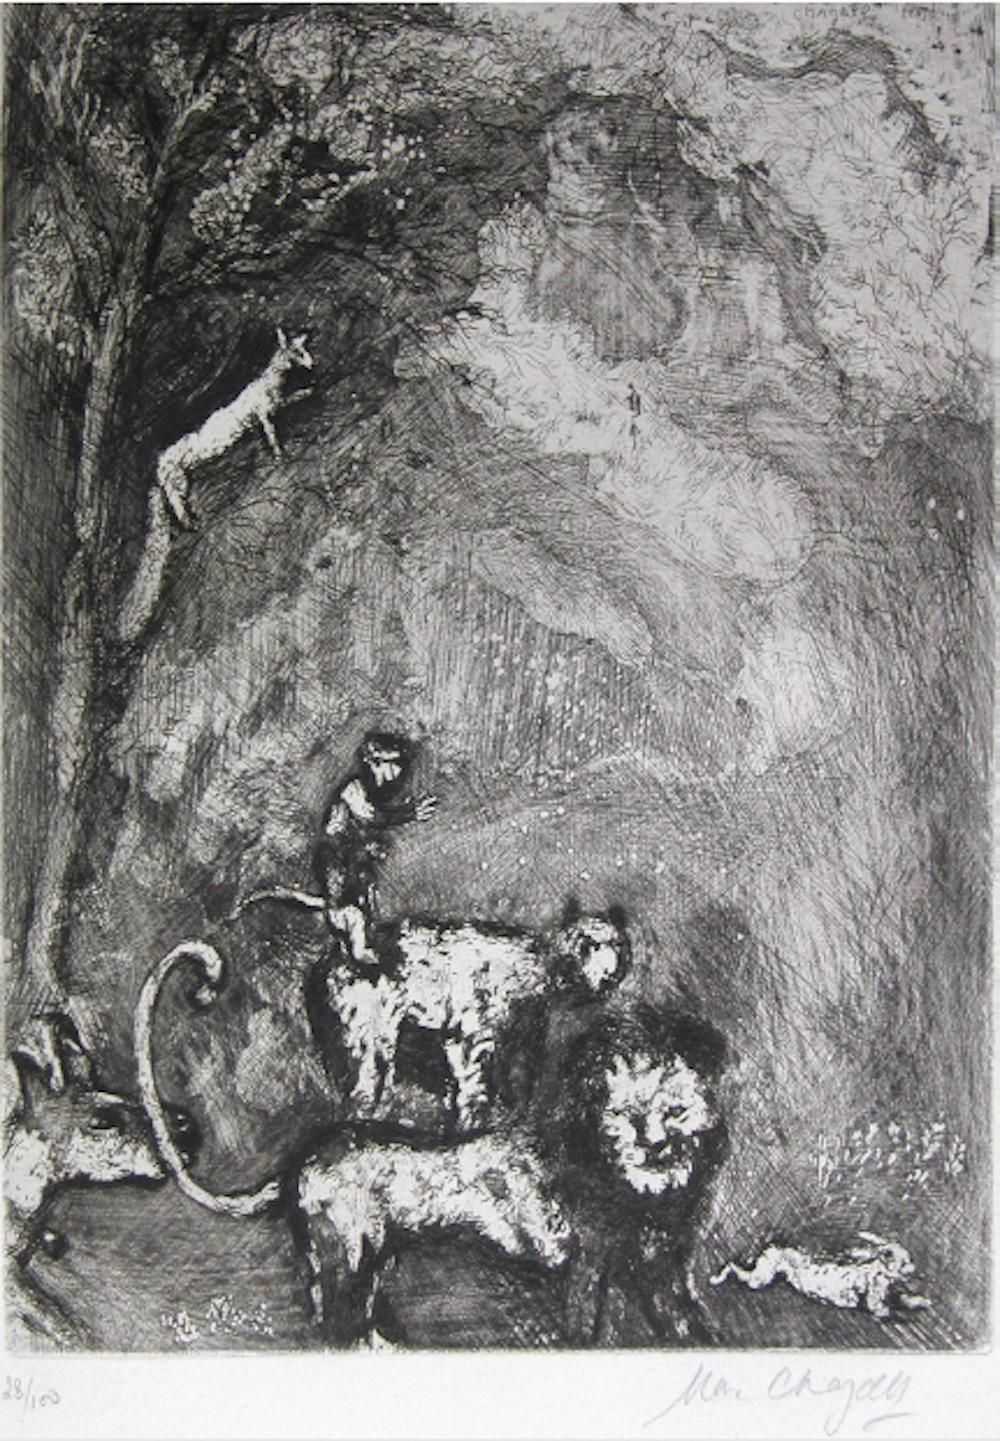 Der Lion s'en allant en guerre ist eine wunderbare Radierung:: Aquatinta und Wurzelholzarbeit von Marc Chagall. Handnummeriert und mit Bleistift am unteren Rand signiert. Auflage von 100 Drucken. 

Die Serie „Les Fables de La Fontaine“ stammt aus